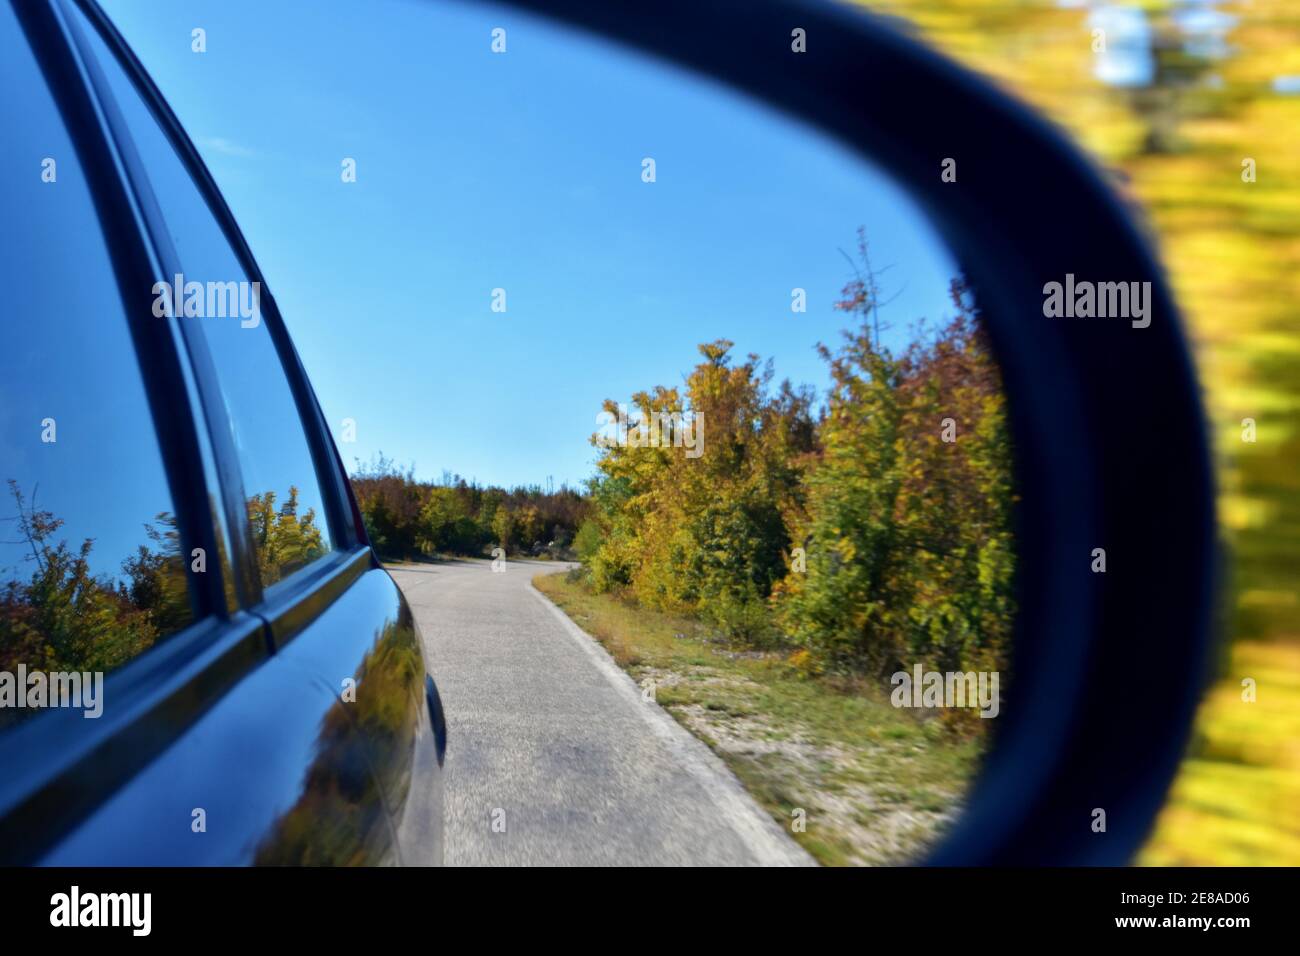 Blick auf den Außenspiegel des Autos, der Spiegel reflektiert Straße, Natur  mit grünen Hügeln und einem blauen Himmel mit Wolken Stockfotografie - Alamy